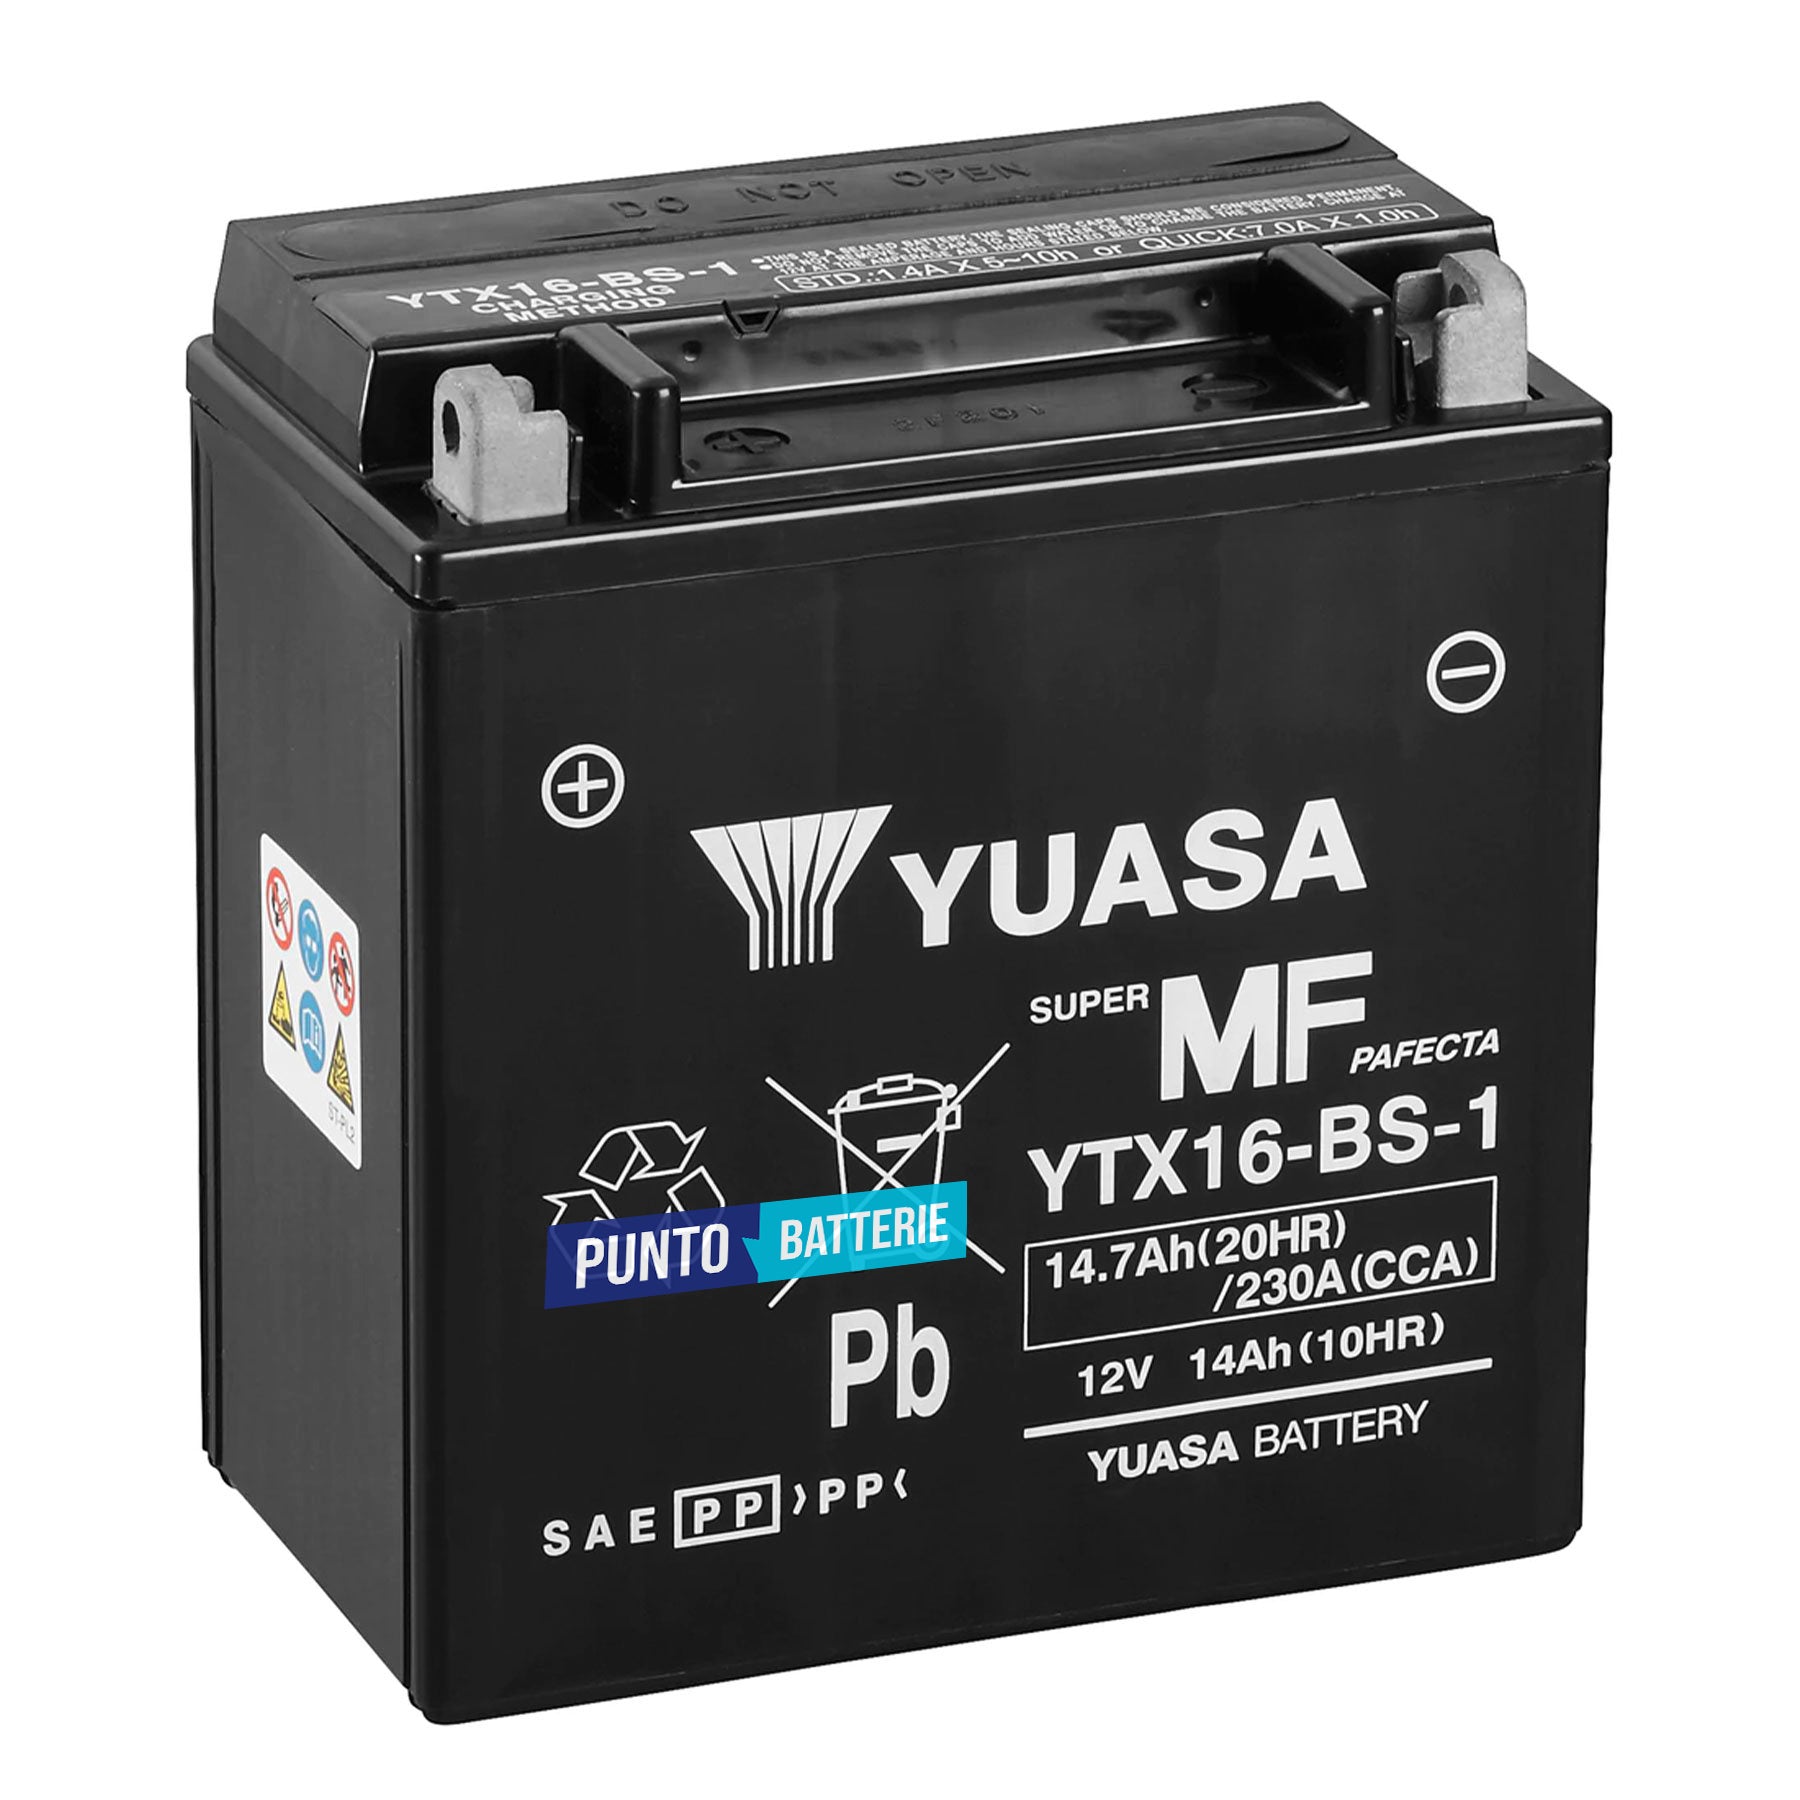 Batteria originale Yuasa YTX YTX16-BS-1, dimensioni 150 x 87 x 161, polo positivo a sinistra, 12 volt, 14 amperora, 230 ampere. Batteria per moto, scooter e powersport.